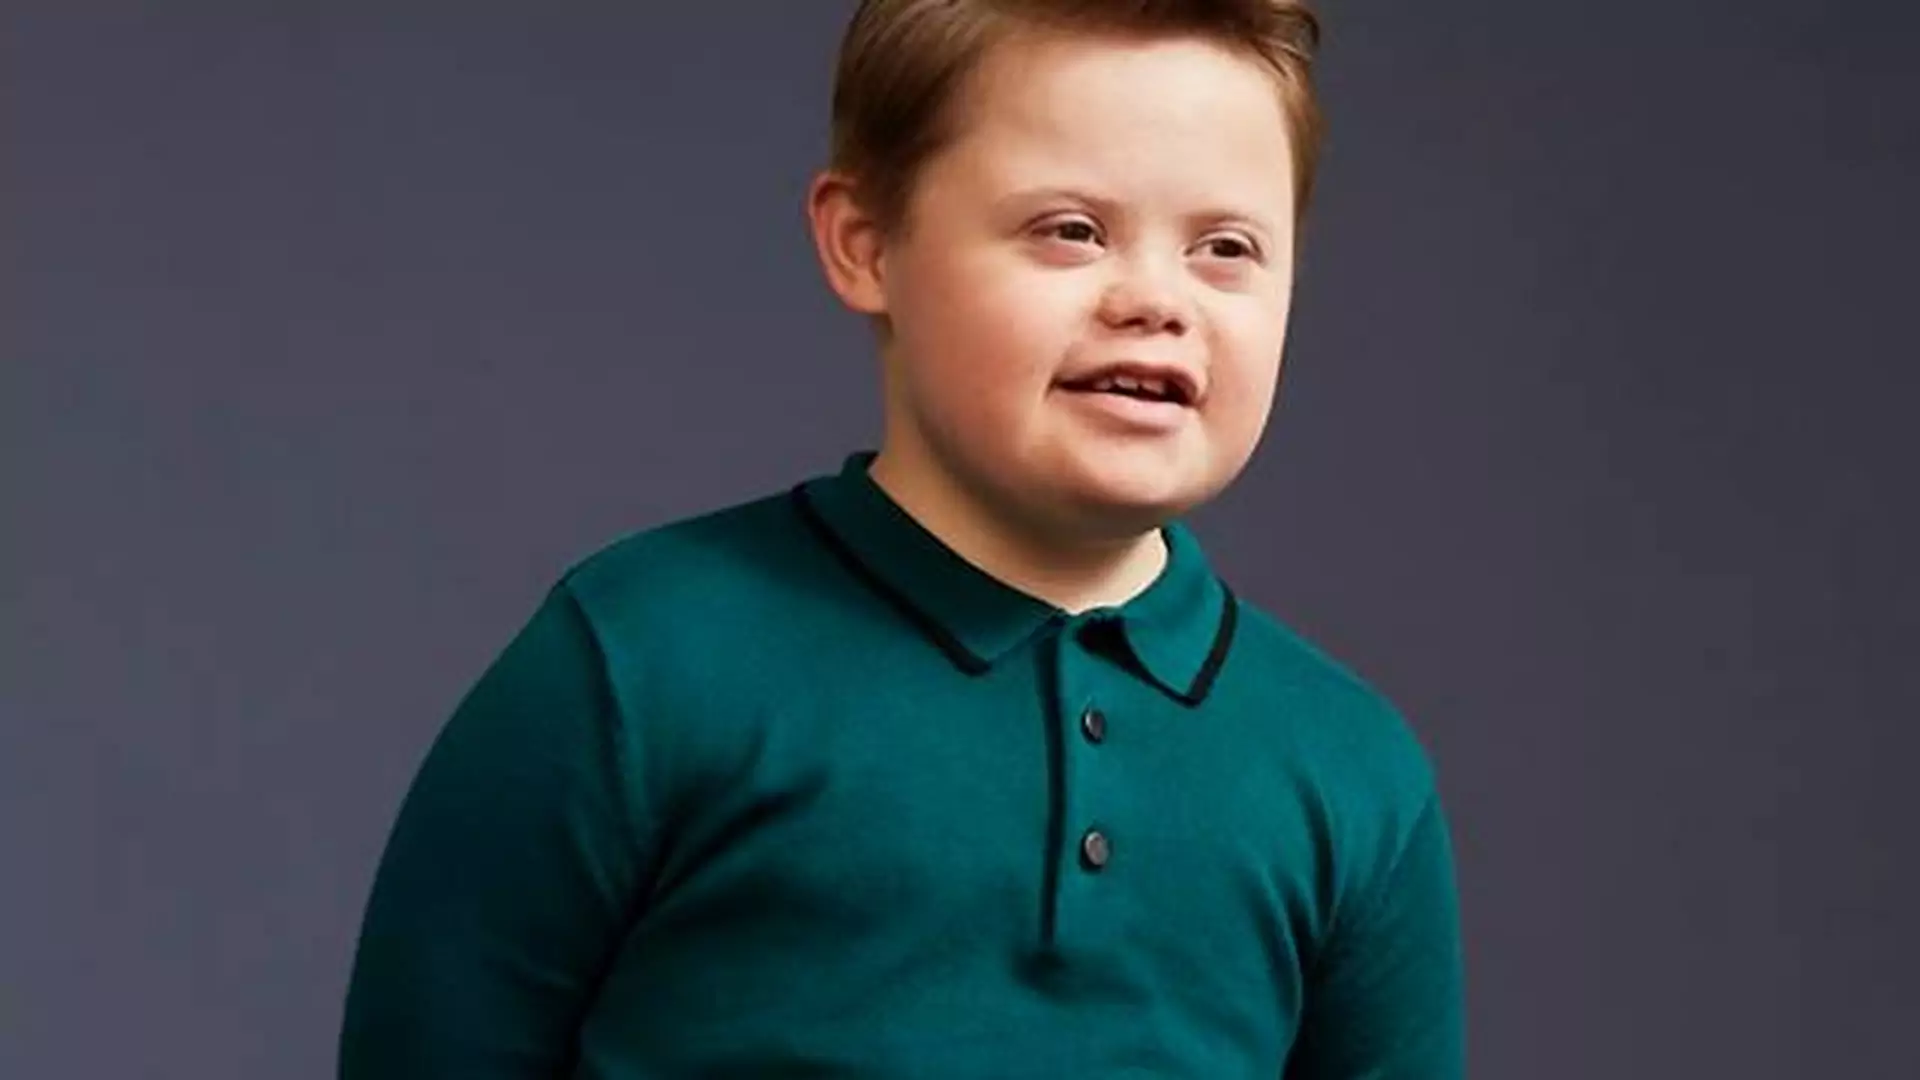 Chłopiec z zespołem Downa został modelem. "Niepełnosprawność nie definiuje go go, jest zwyczajnym człowiekiem"